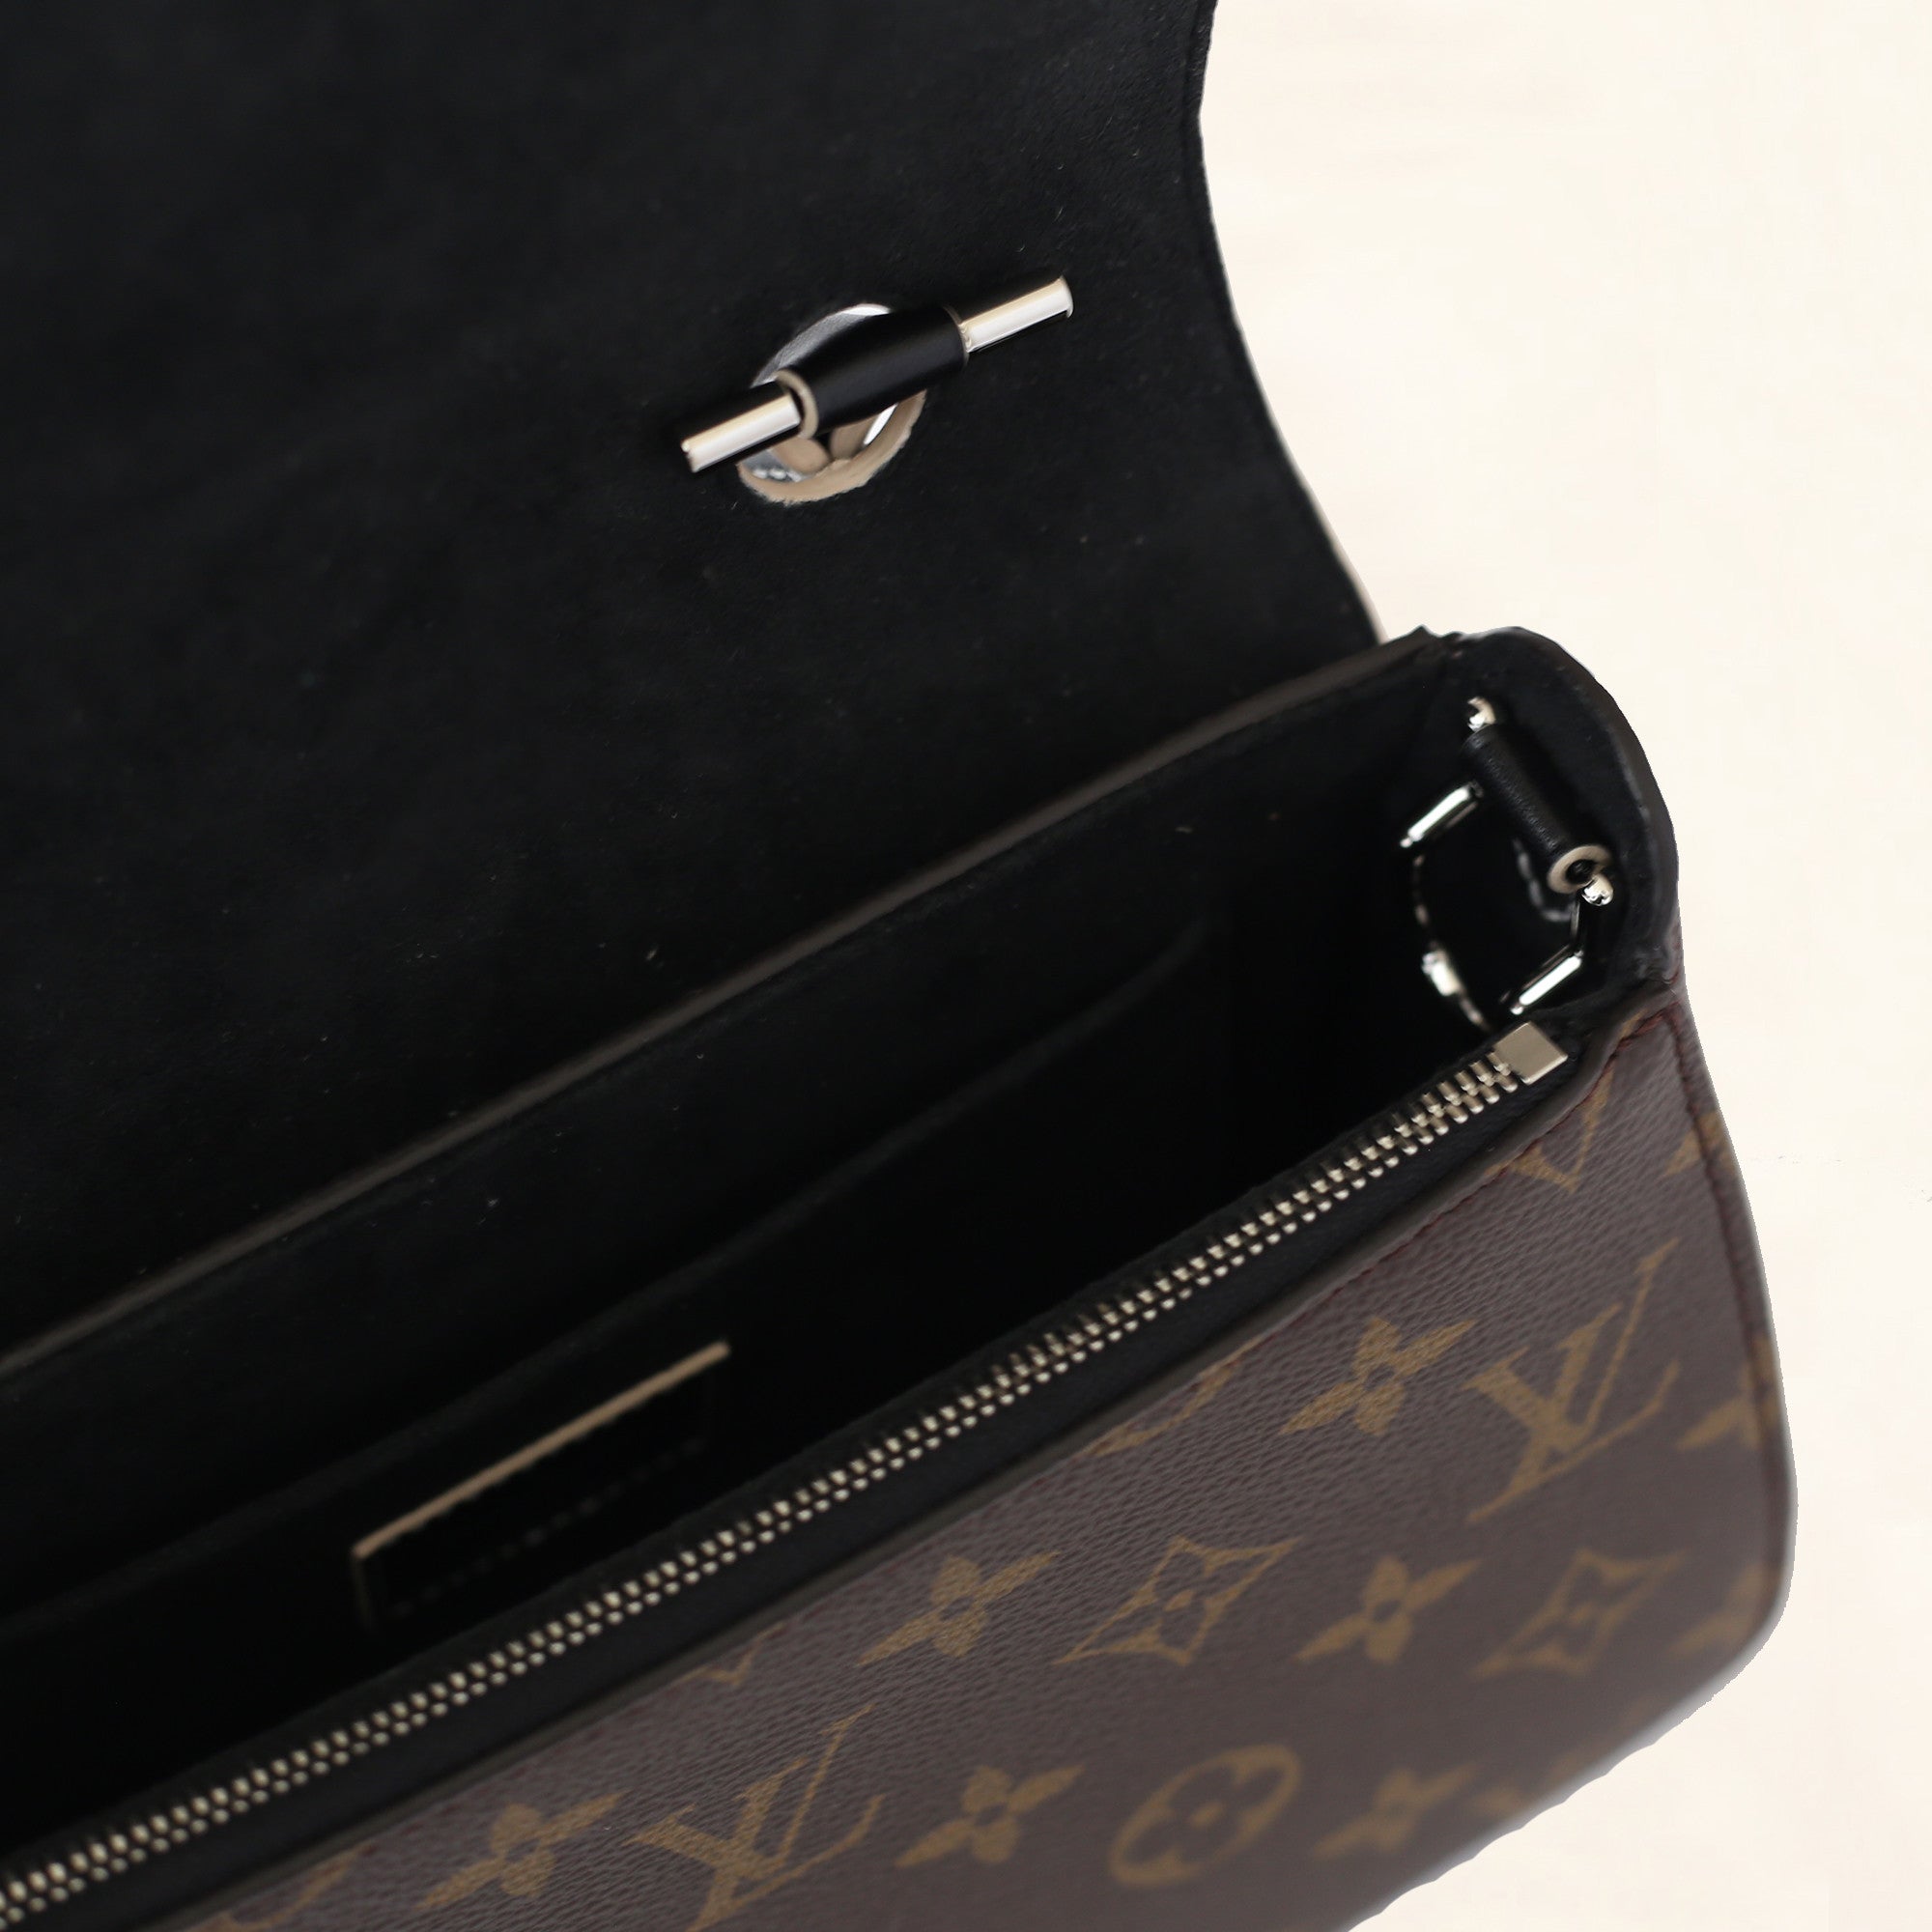 Louis Vuitton, Brown monogram canvas messenger bag. - Unique Designer Pieces